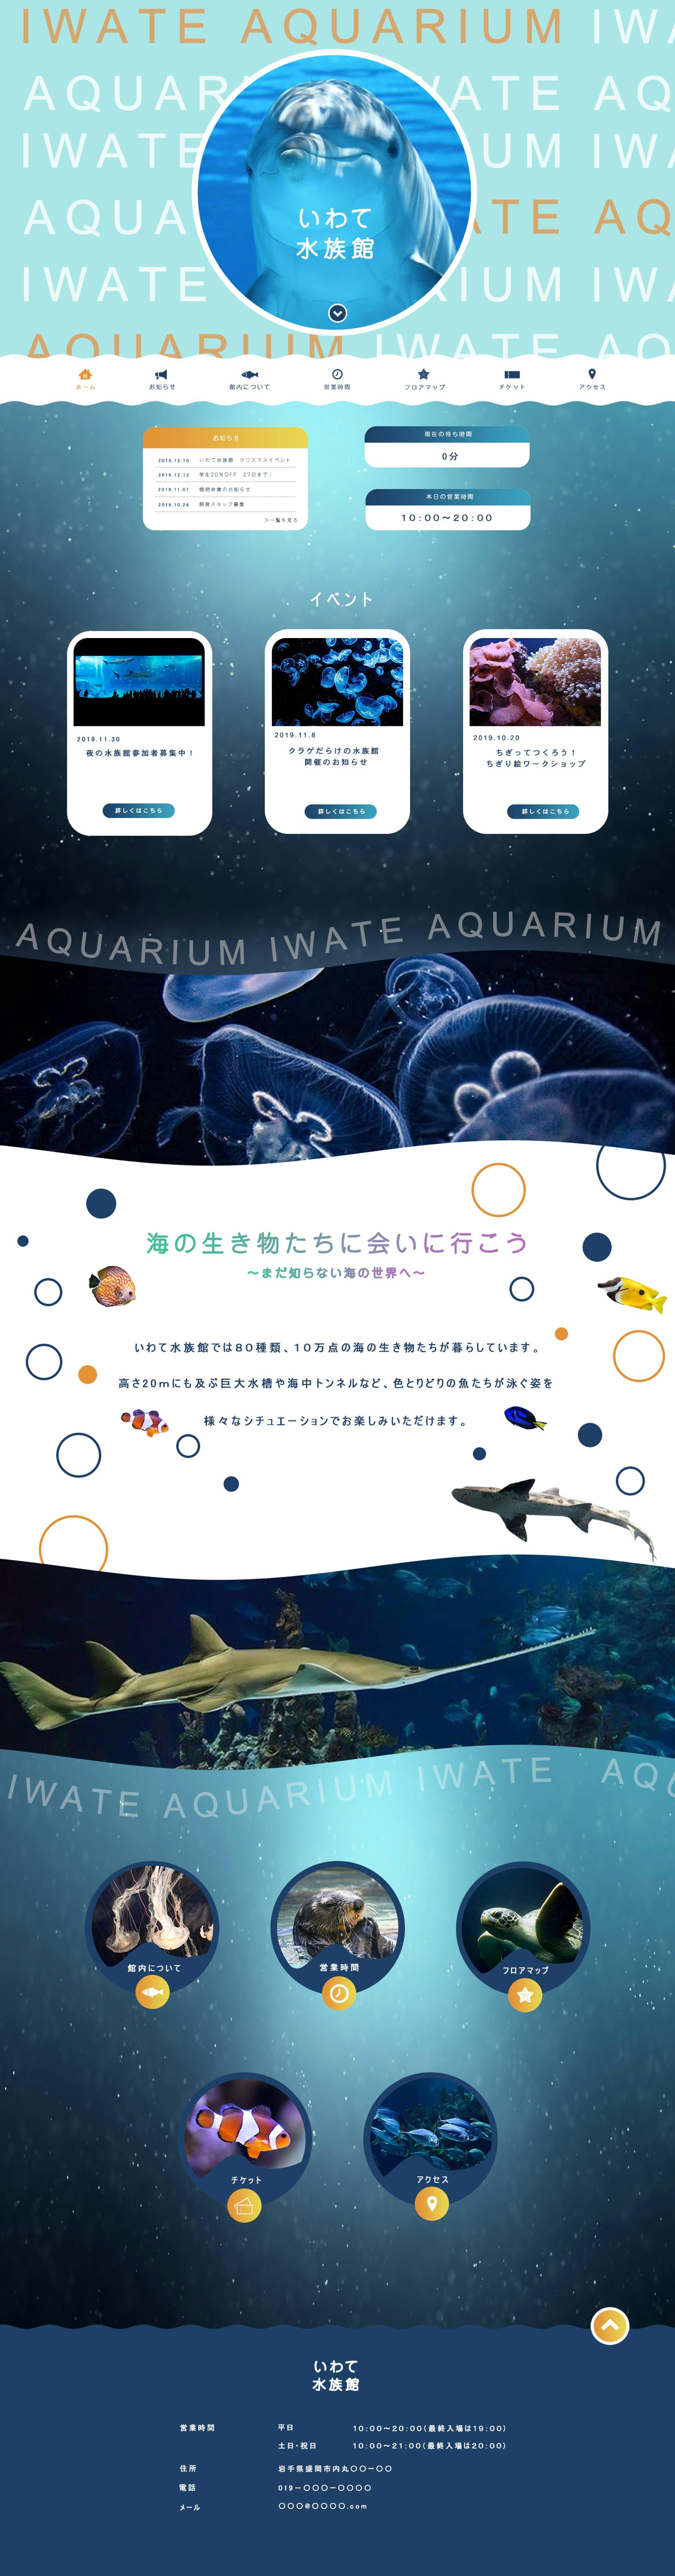 【2020.02】水族館のサイト02-1